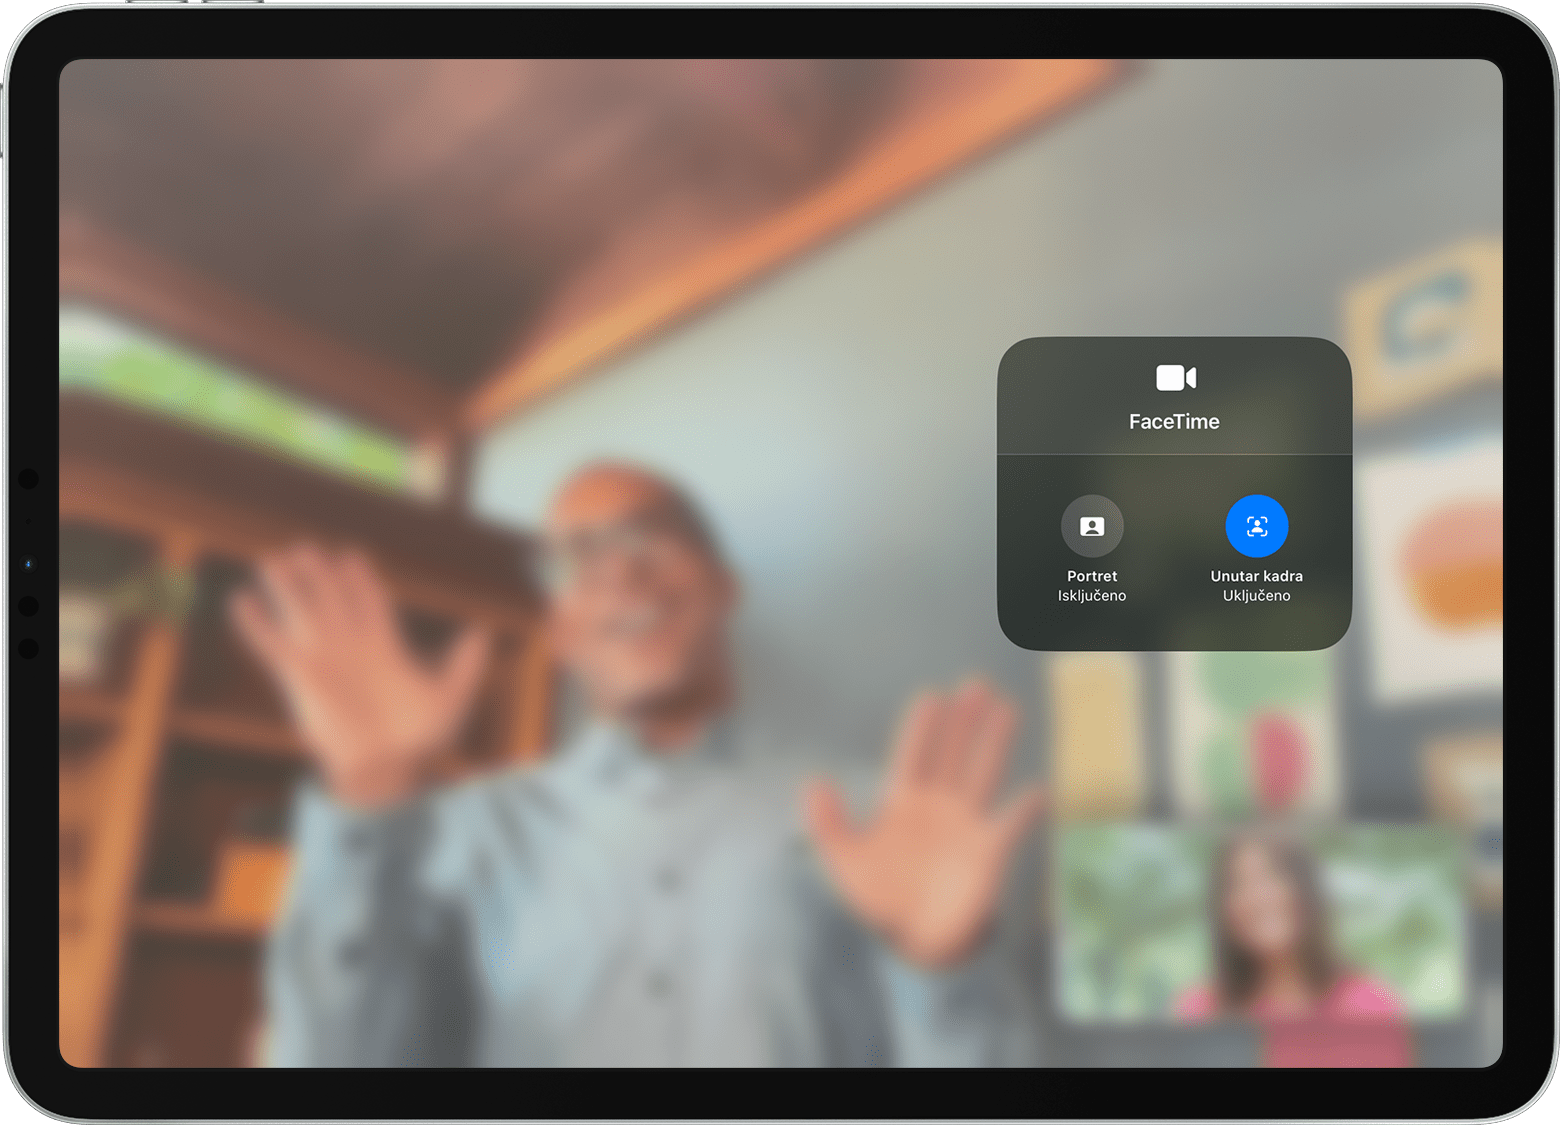 Zaslon iPad uređaja s prikazom poziva u aplikaciji FaceTime i s vidljivim opcijama Video efekti